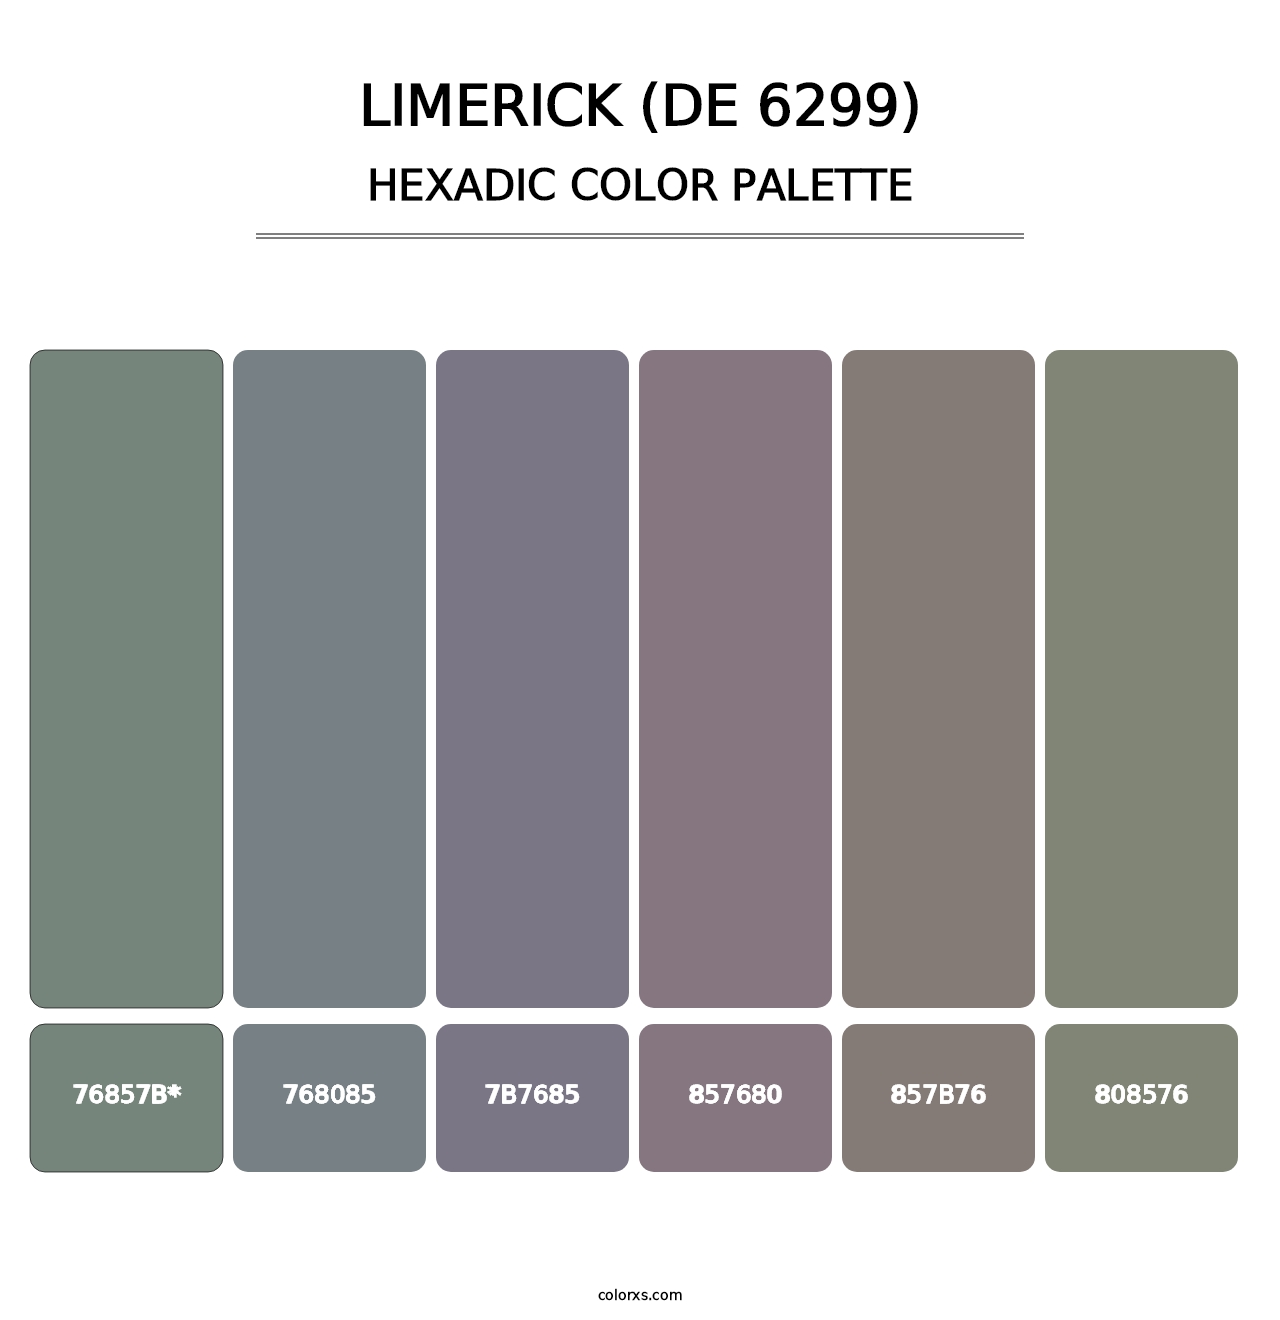 Limerick (DE 6299) - Hexadic Color Palette